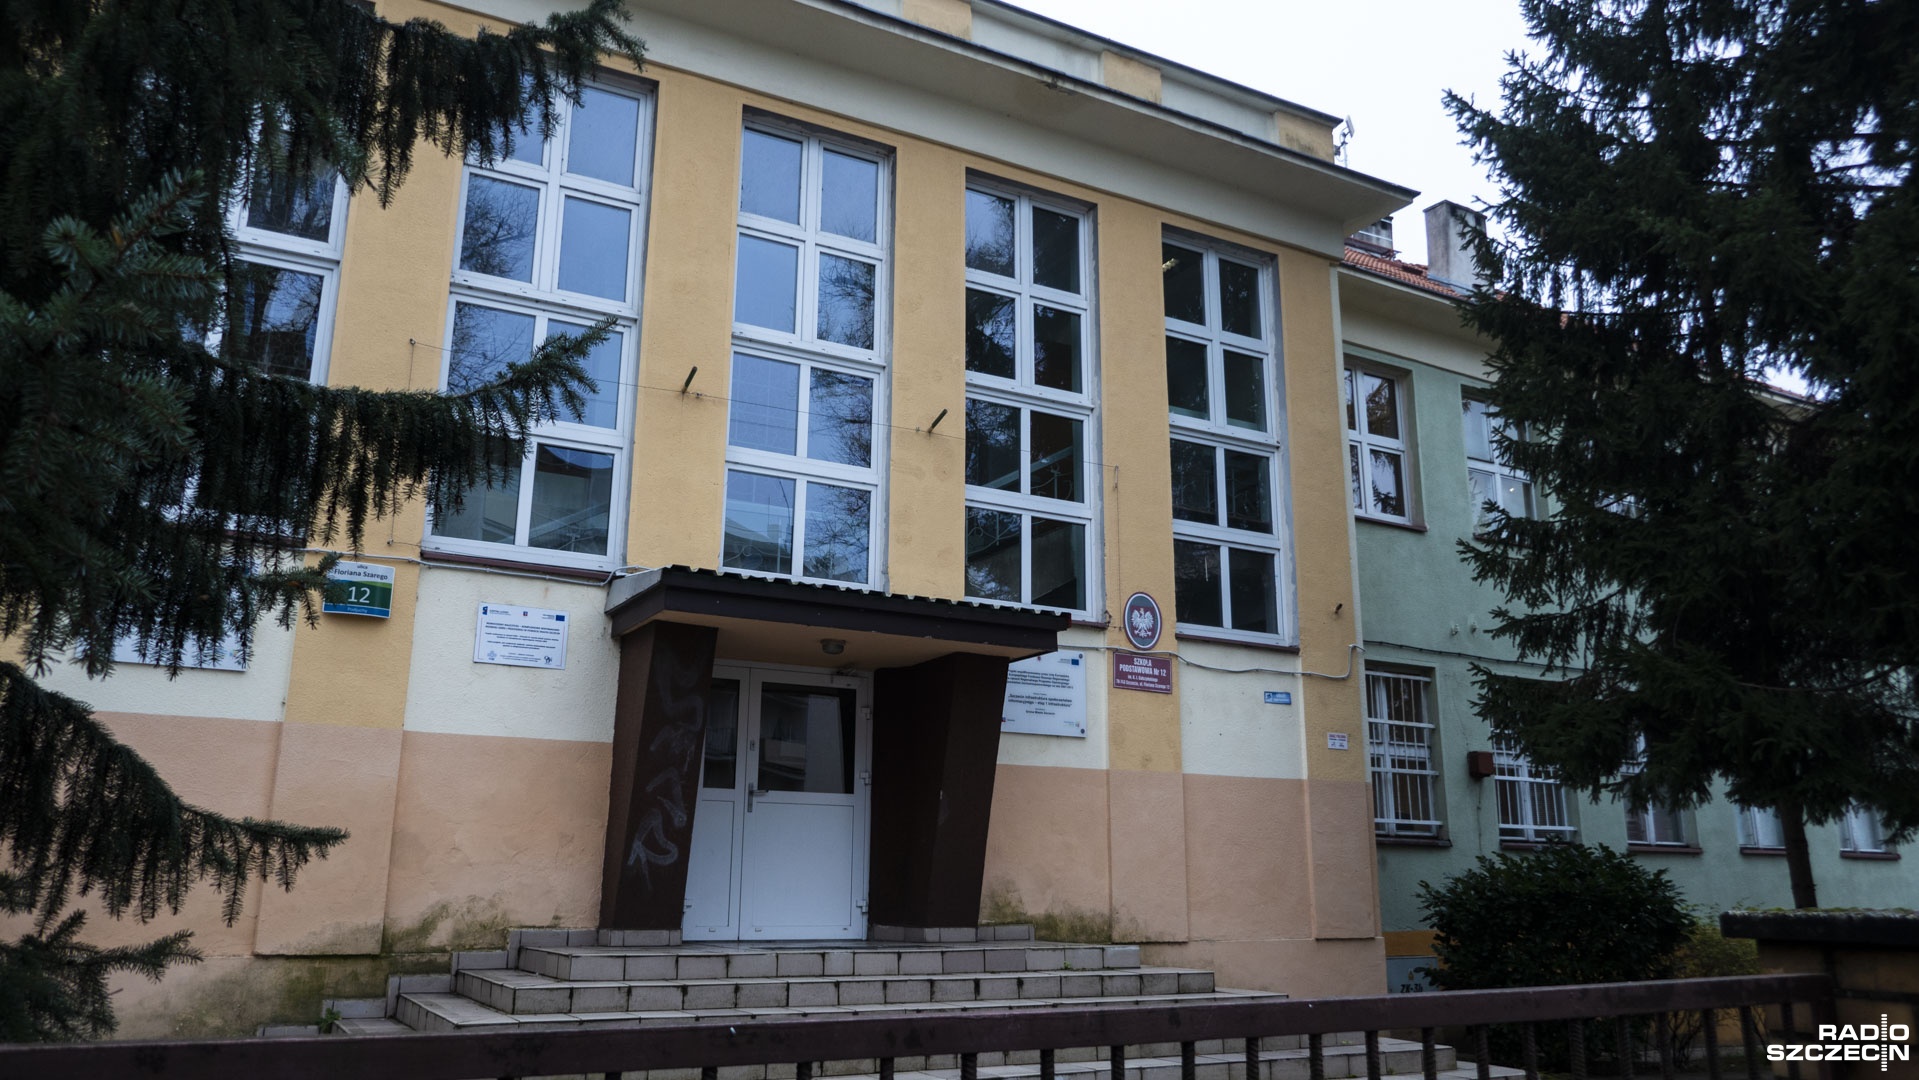 Chłopiec, który terroryzował uczniów w Szkole Podstawowej nr 12 w Szczecinie, zostanie przeniesiony do młodzieżowego ośrodka wychowawczego - ustaliło Radio Szczecin. O sprawie informowaliśmy w czwartek.